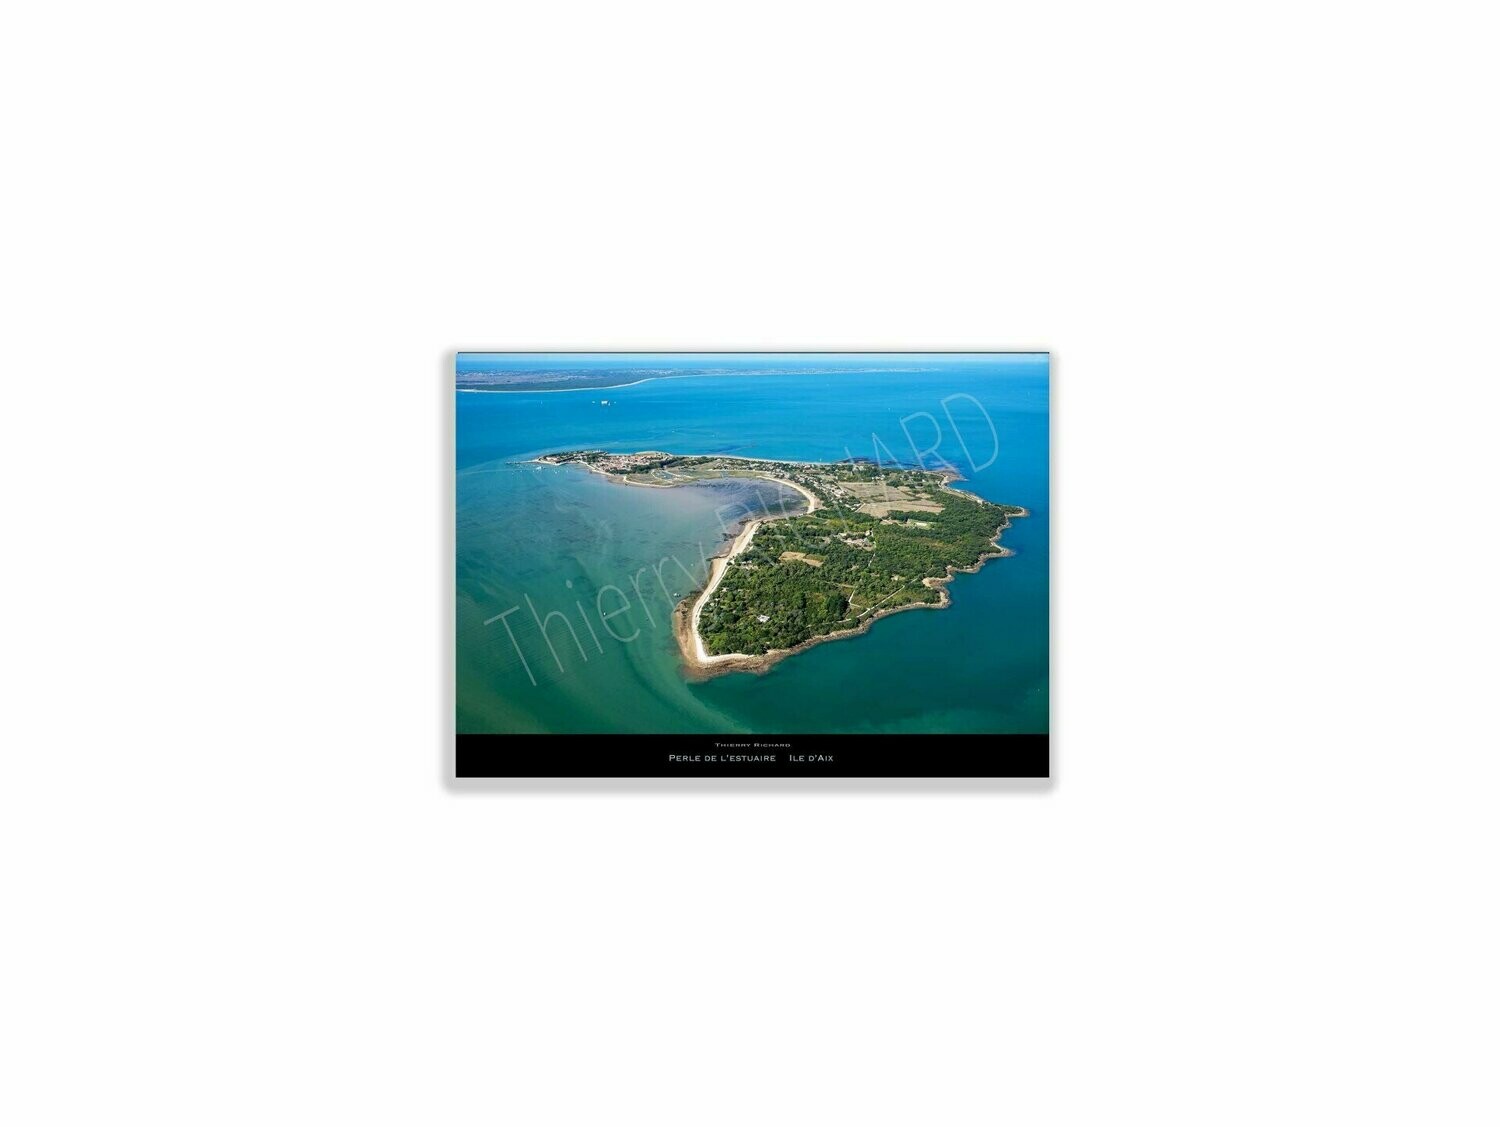 Perle de l'estuaire île d'Aix, Dimensions photo: Tirage 30x40 cm